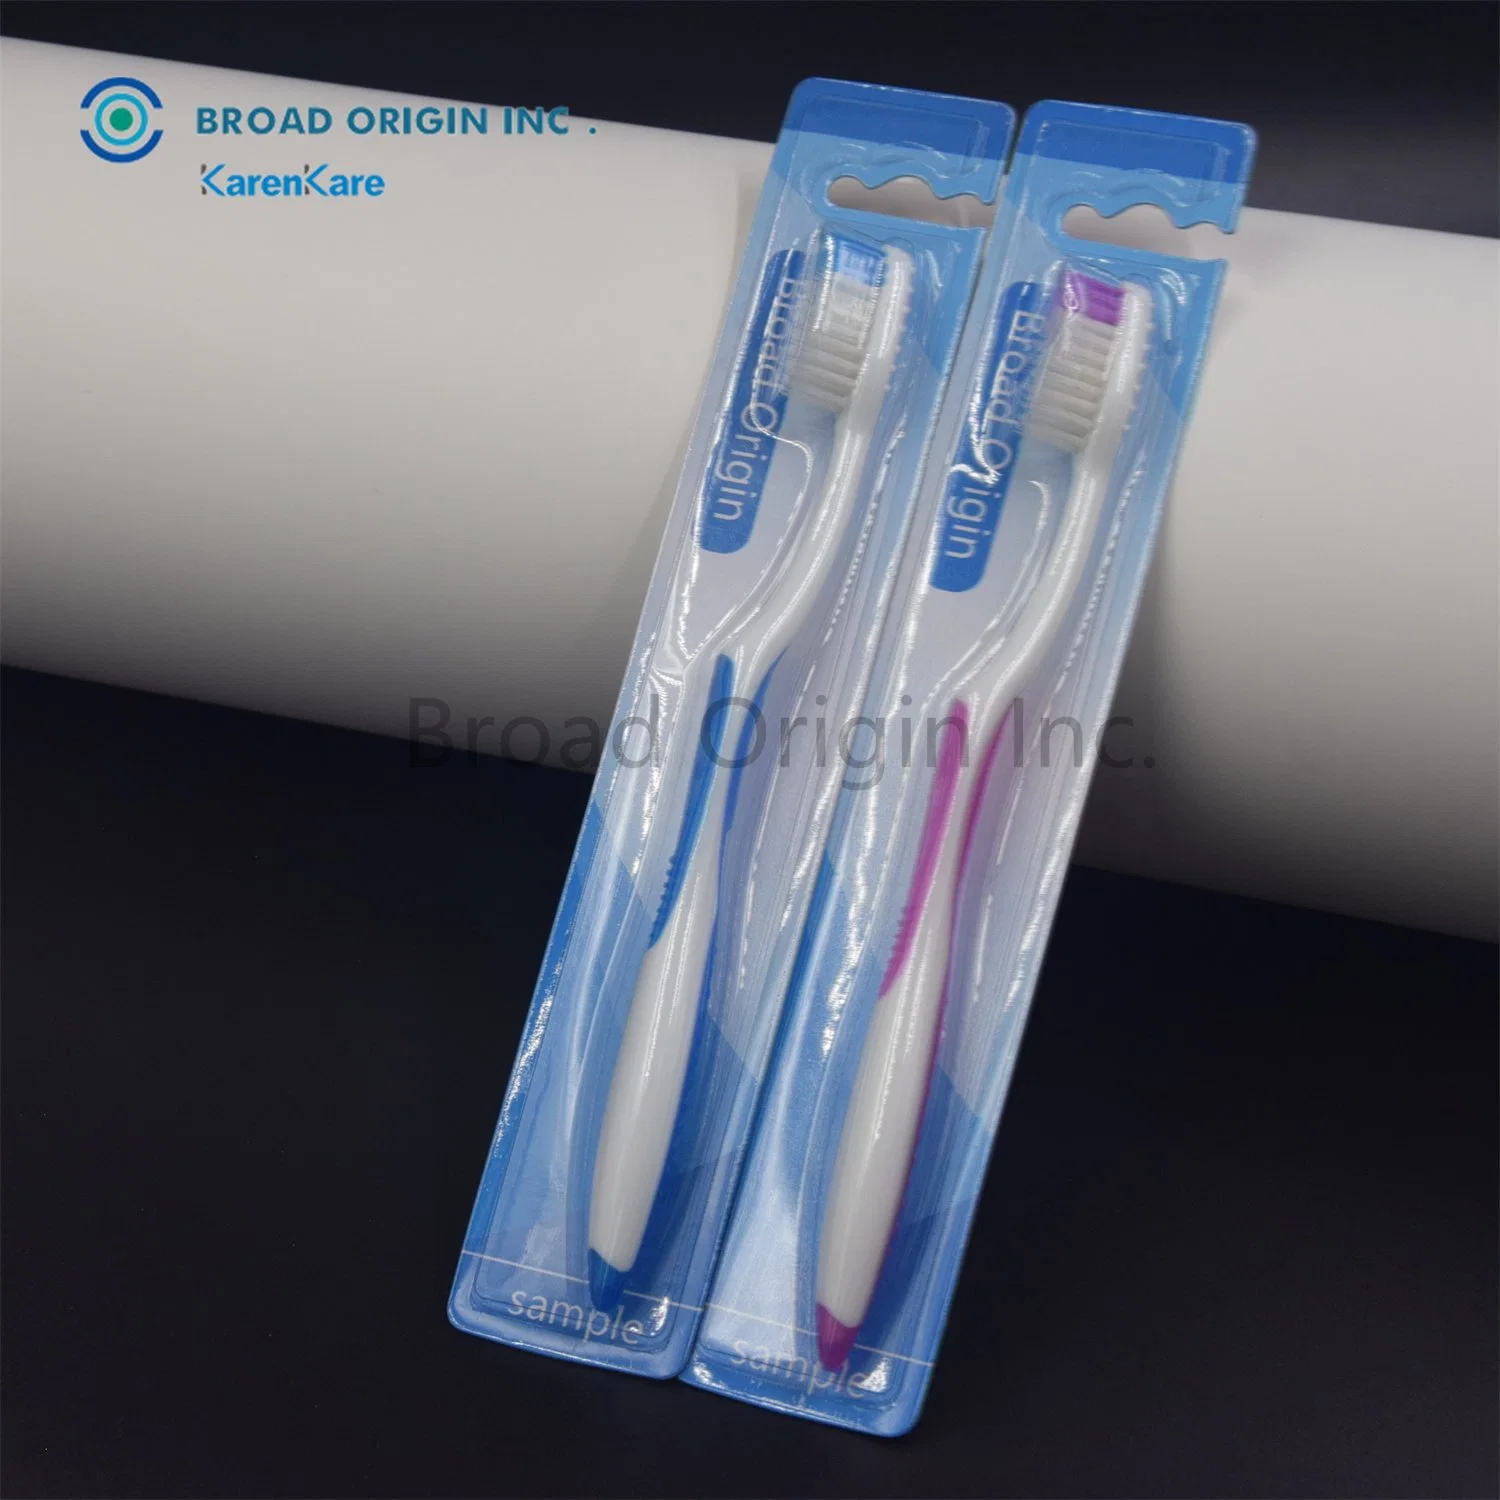 العناية بالفم علامة تجارية مخصصة عالية الجودة فرشاة أسنان نظيفة إضافية مصنّعة من قبل الشركة المصنعة للمعدات الأصلية/شركة ODM